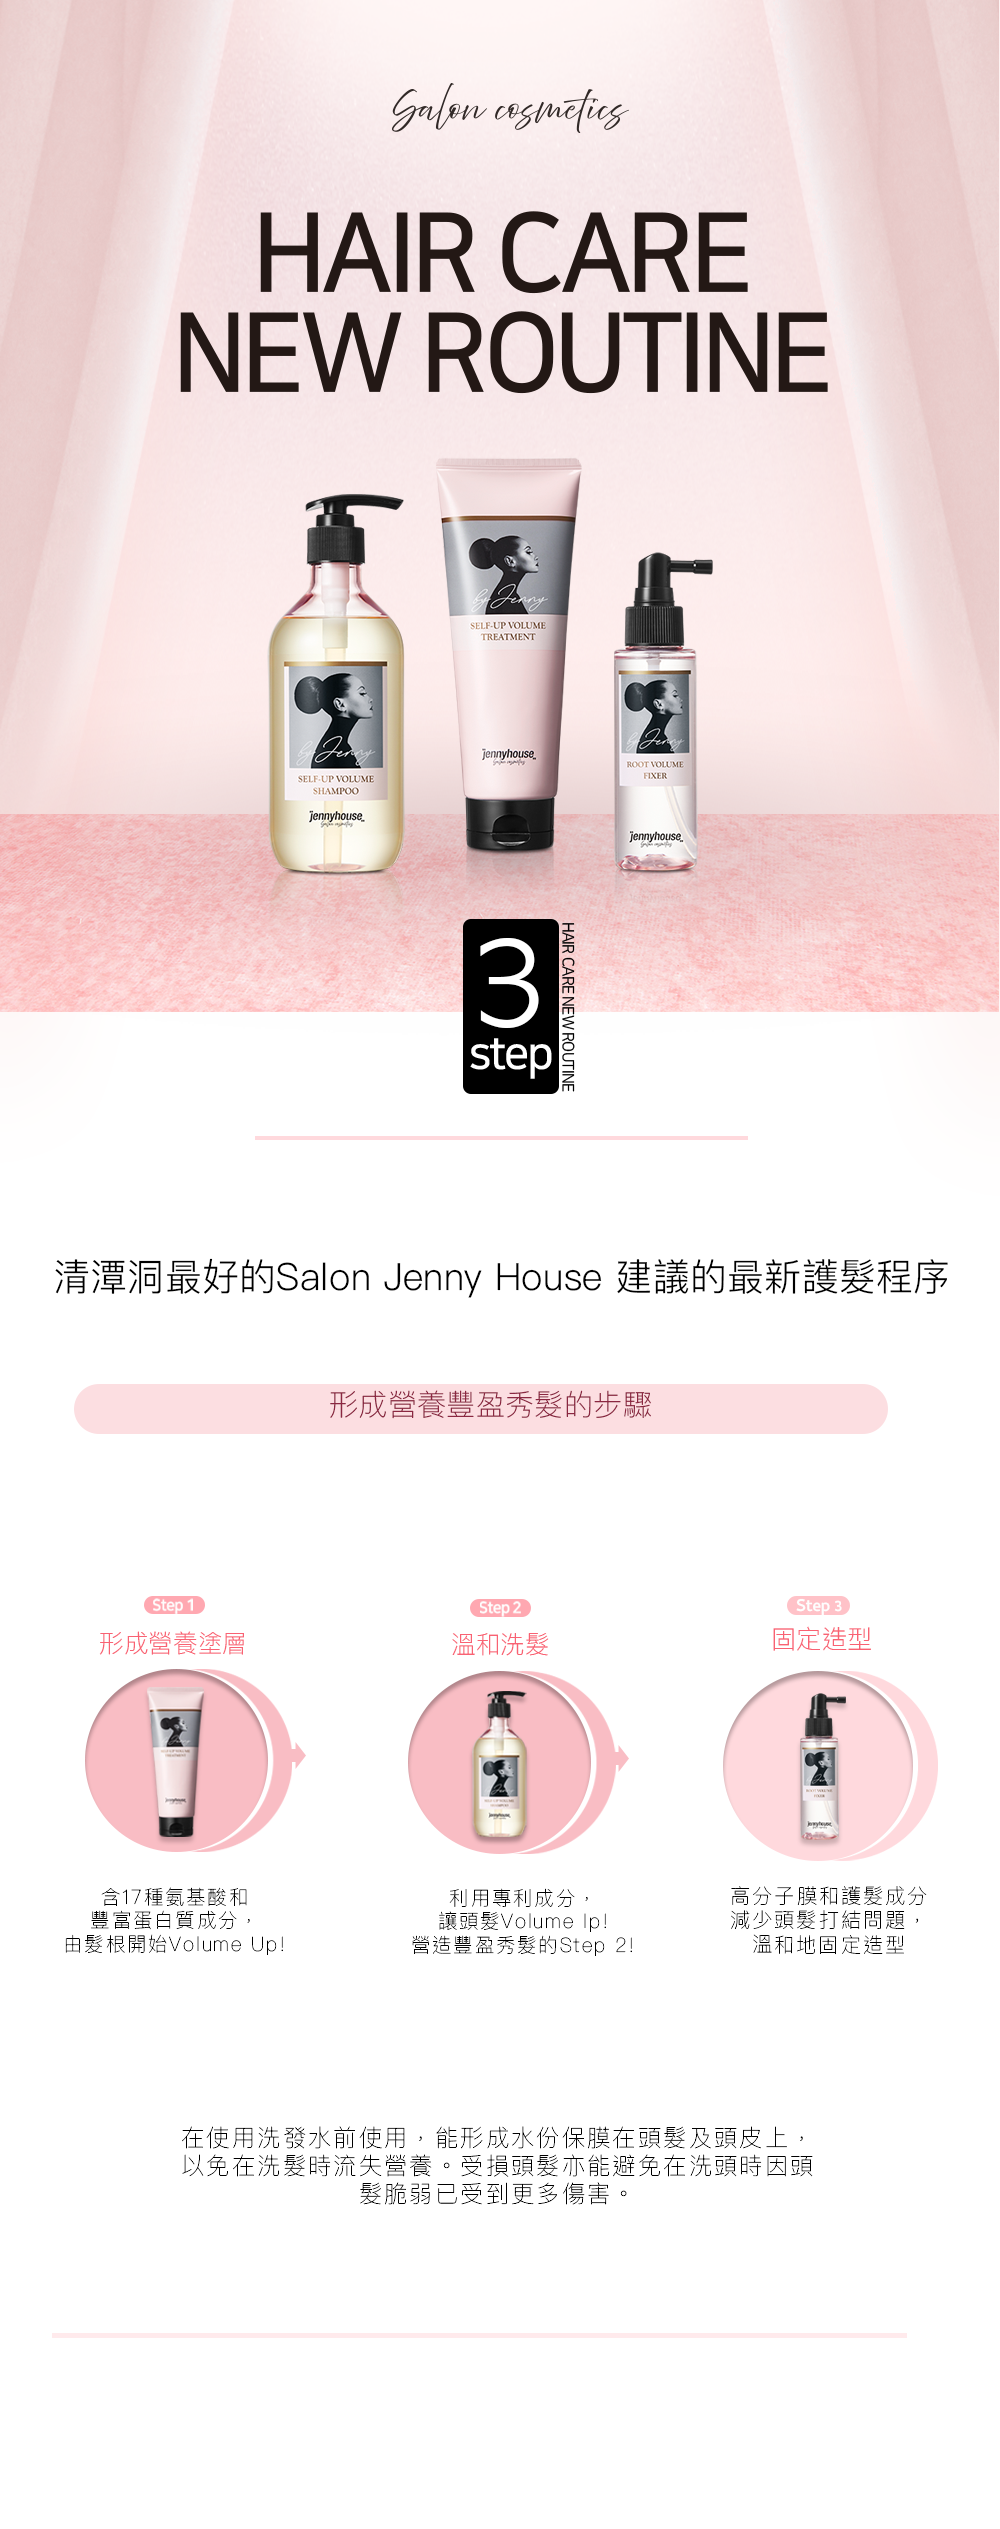 Jenny House HK Self-up Volume